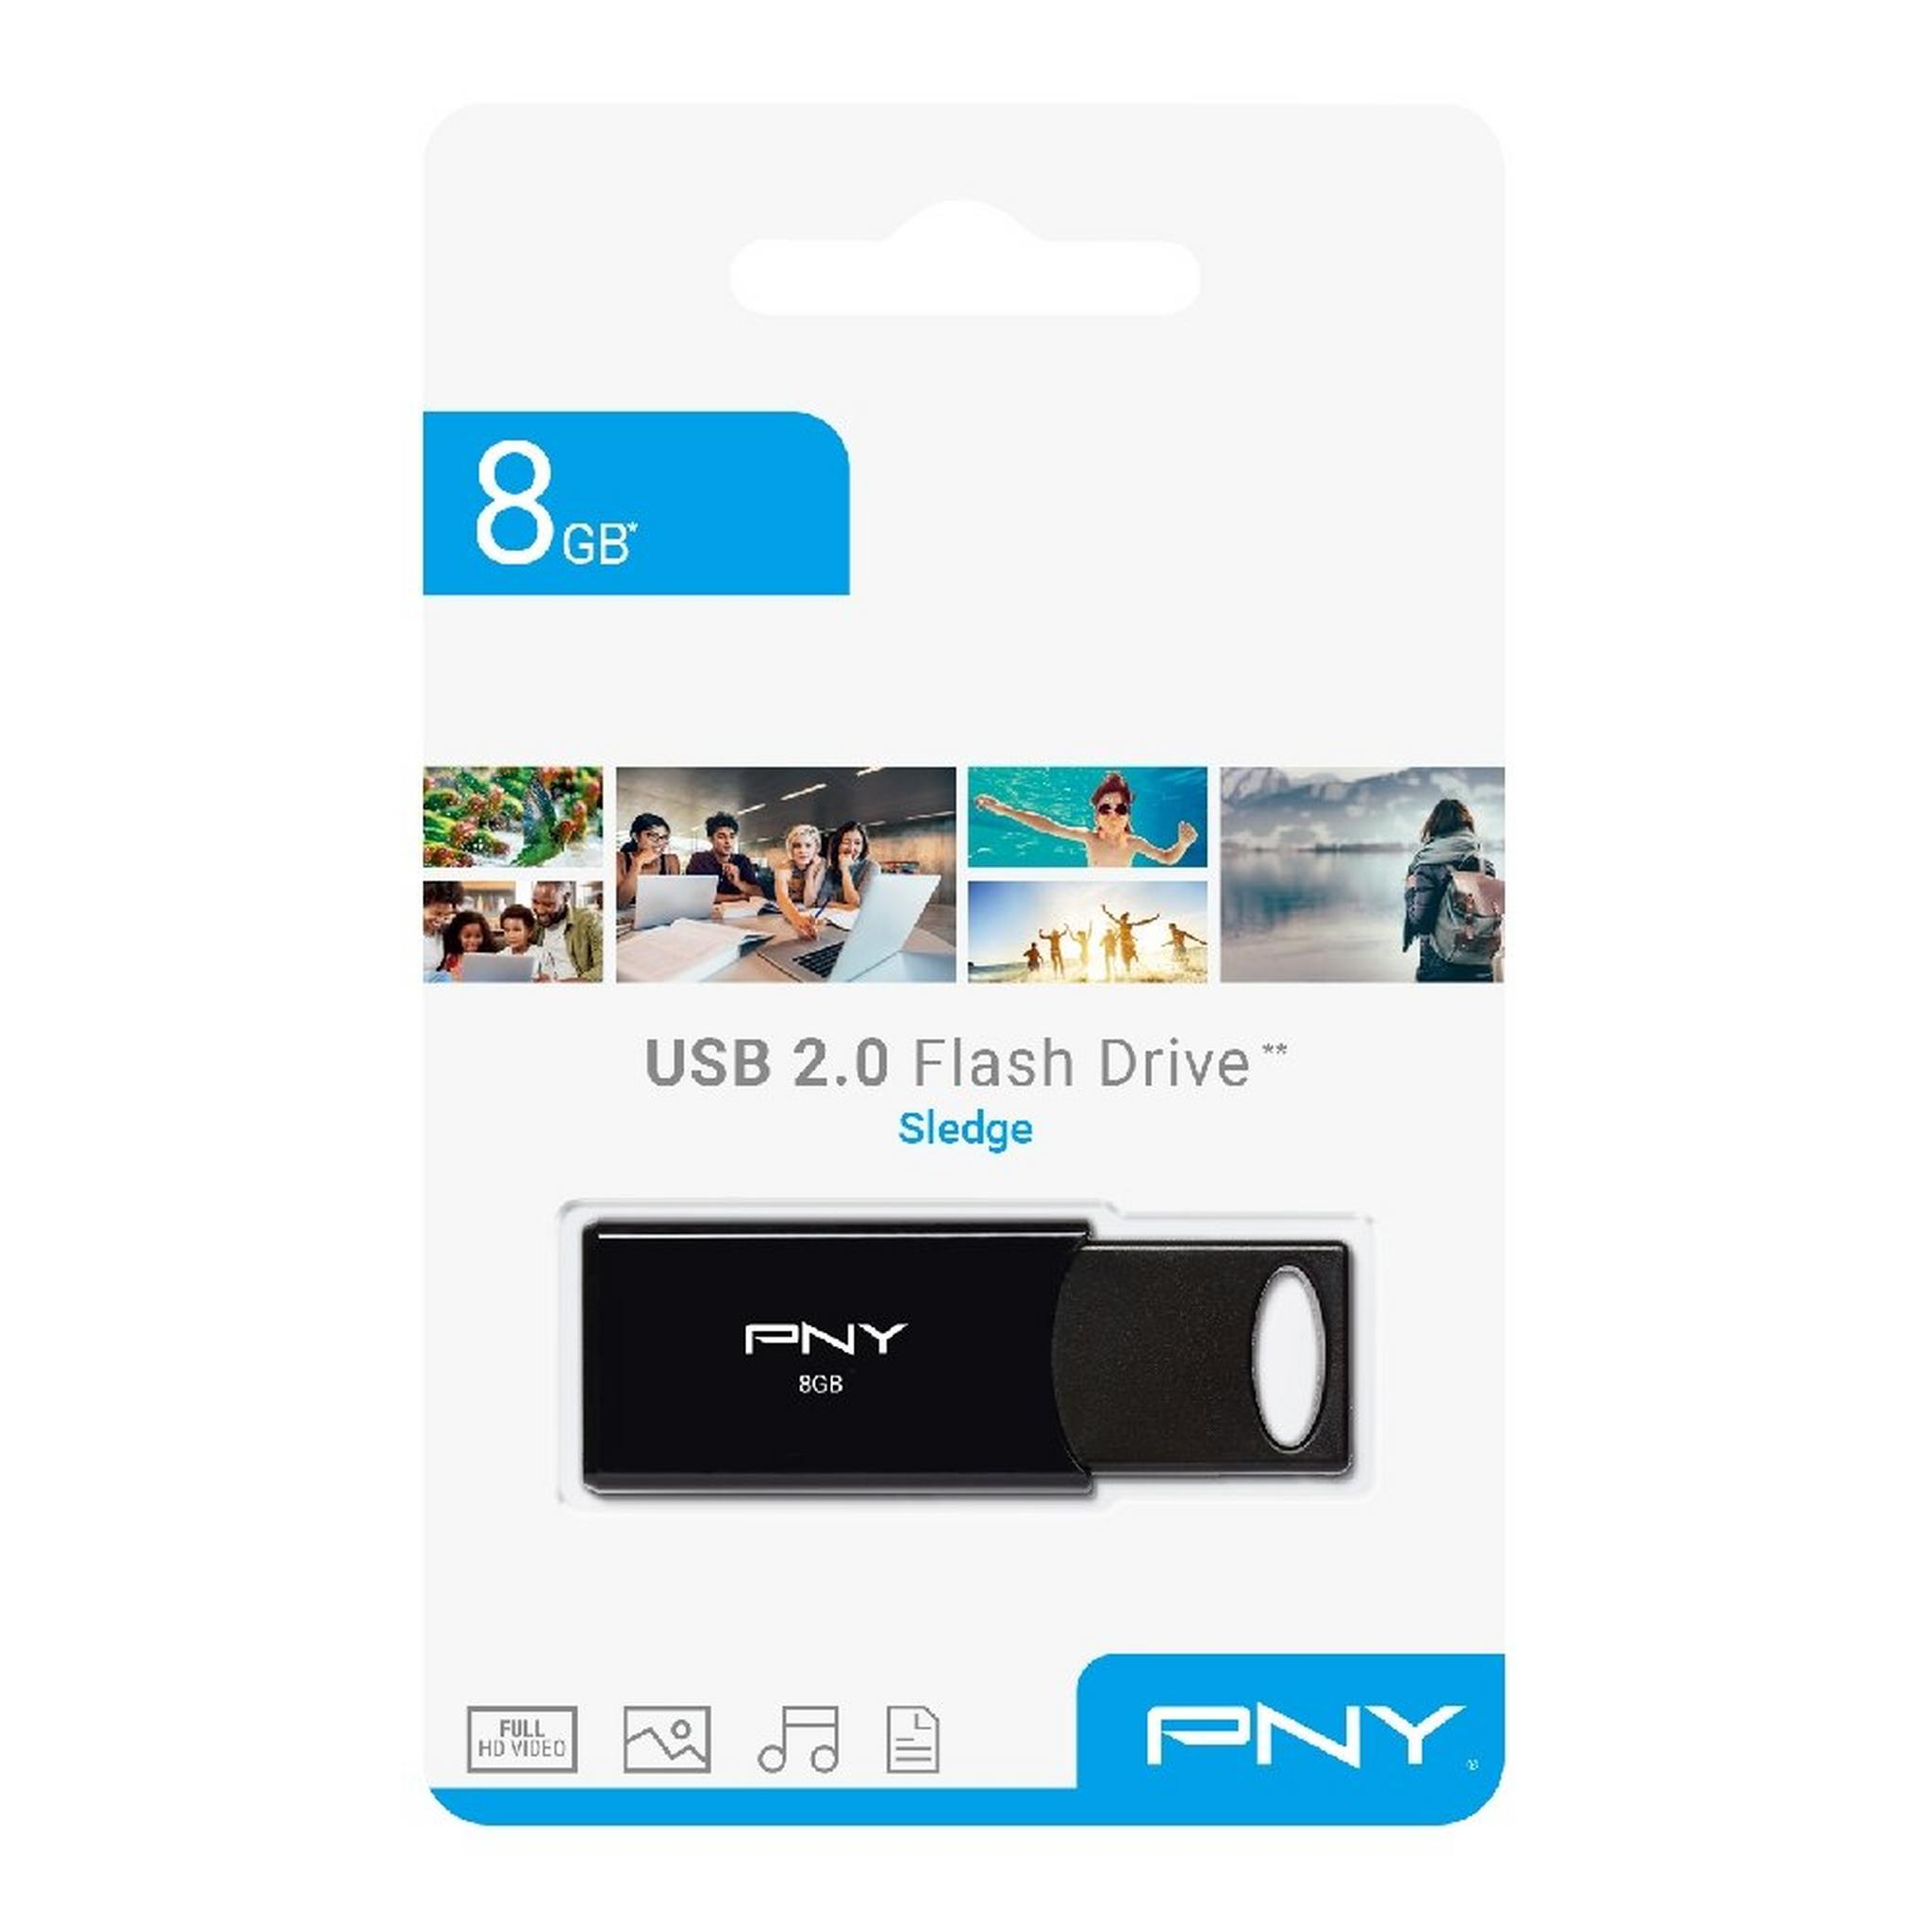 PNY Flash Drive Sledge USB 2.0 | 8GB